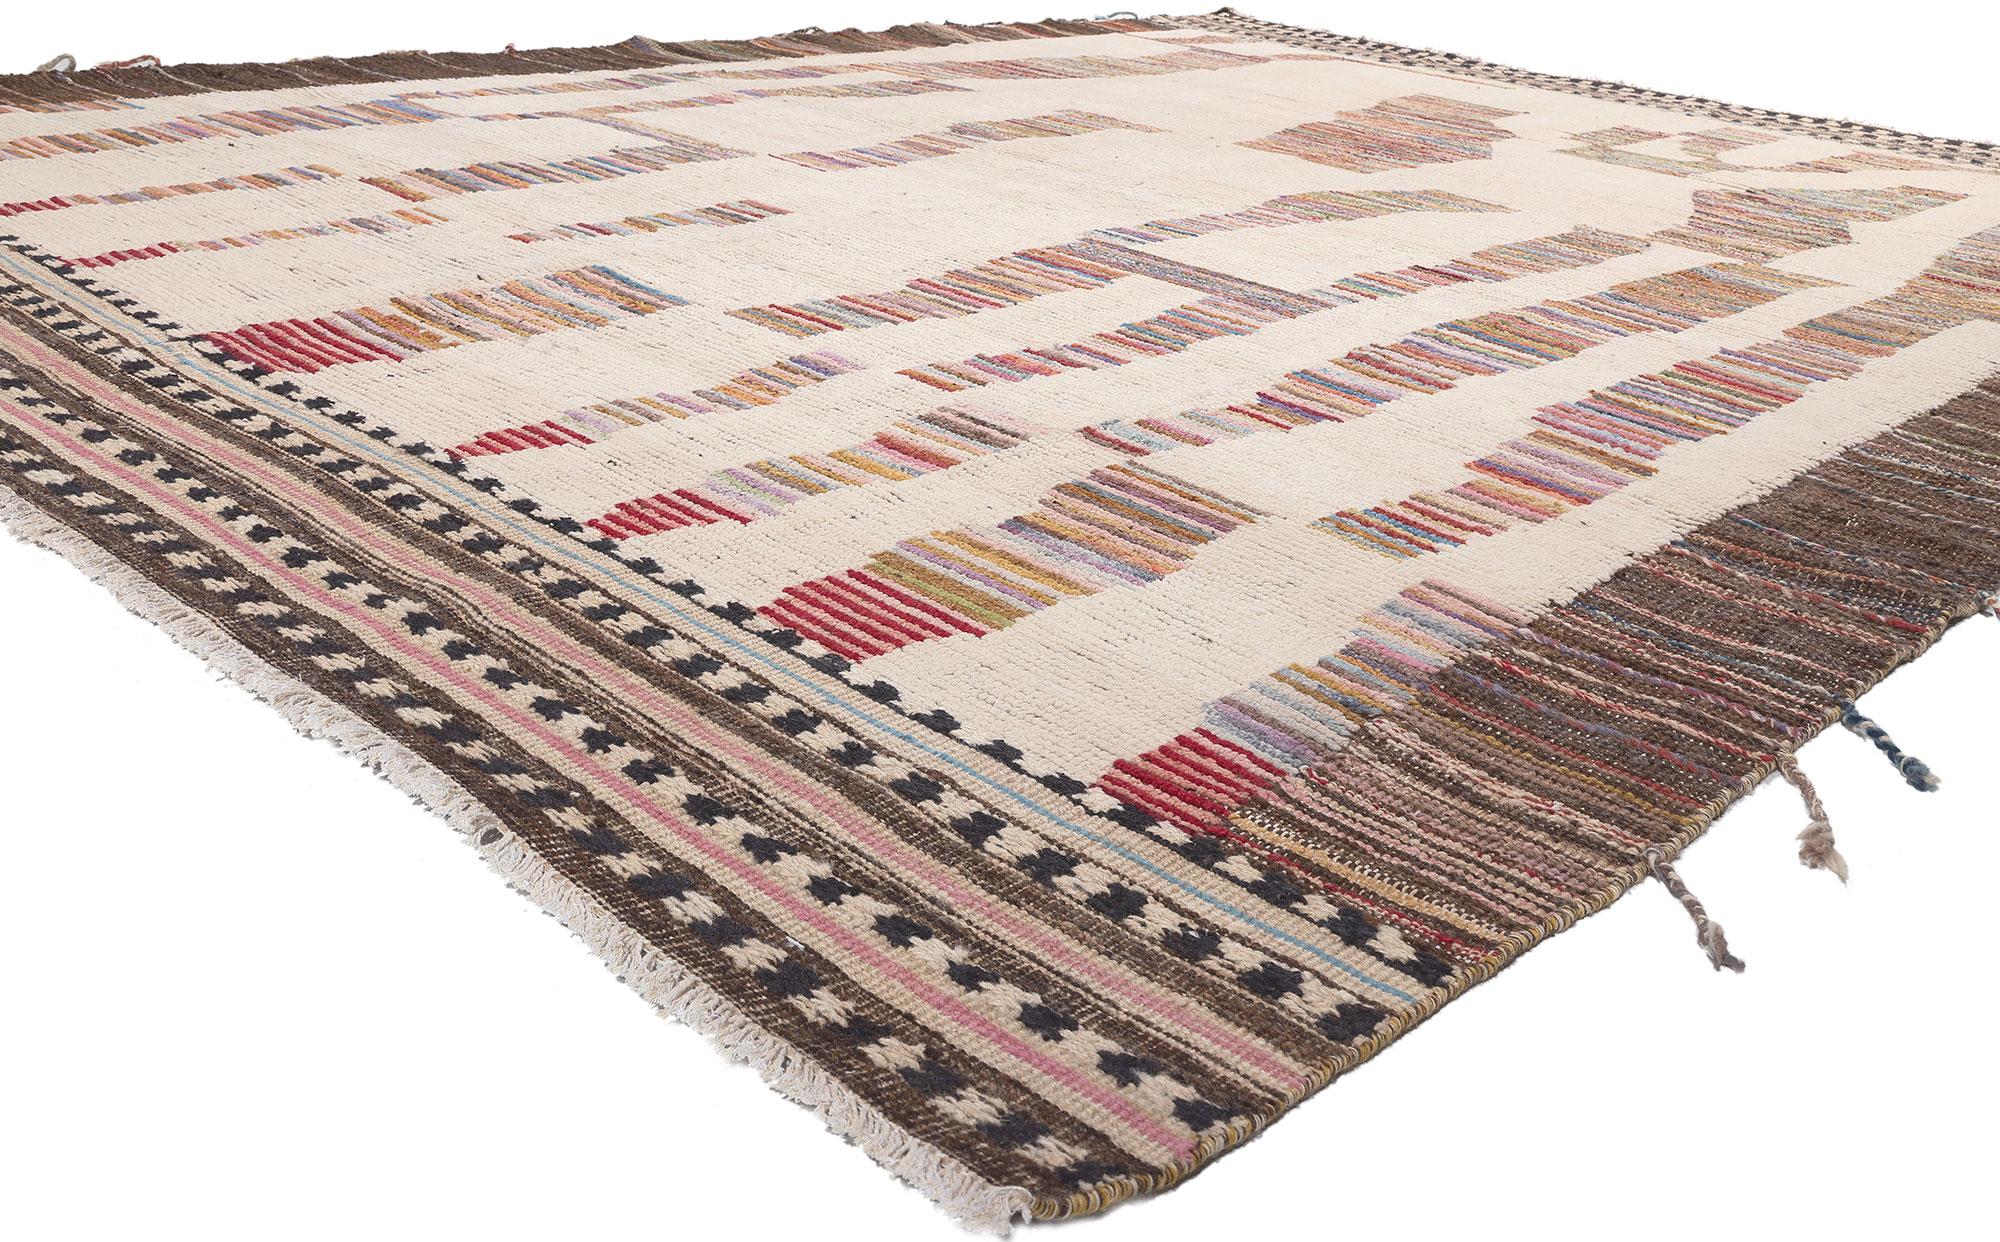 81010 Moderner marokkanischer Teppich mit erdfarbenen Tönen, 10'04 x 13'09. Dieser moderne marokkanische Teppich versprüht nomadischen Charme mit unglaublichen Details und Texturen und verleiht dem Raum einen gepflegten, zeitlosen Look, der ein